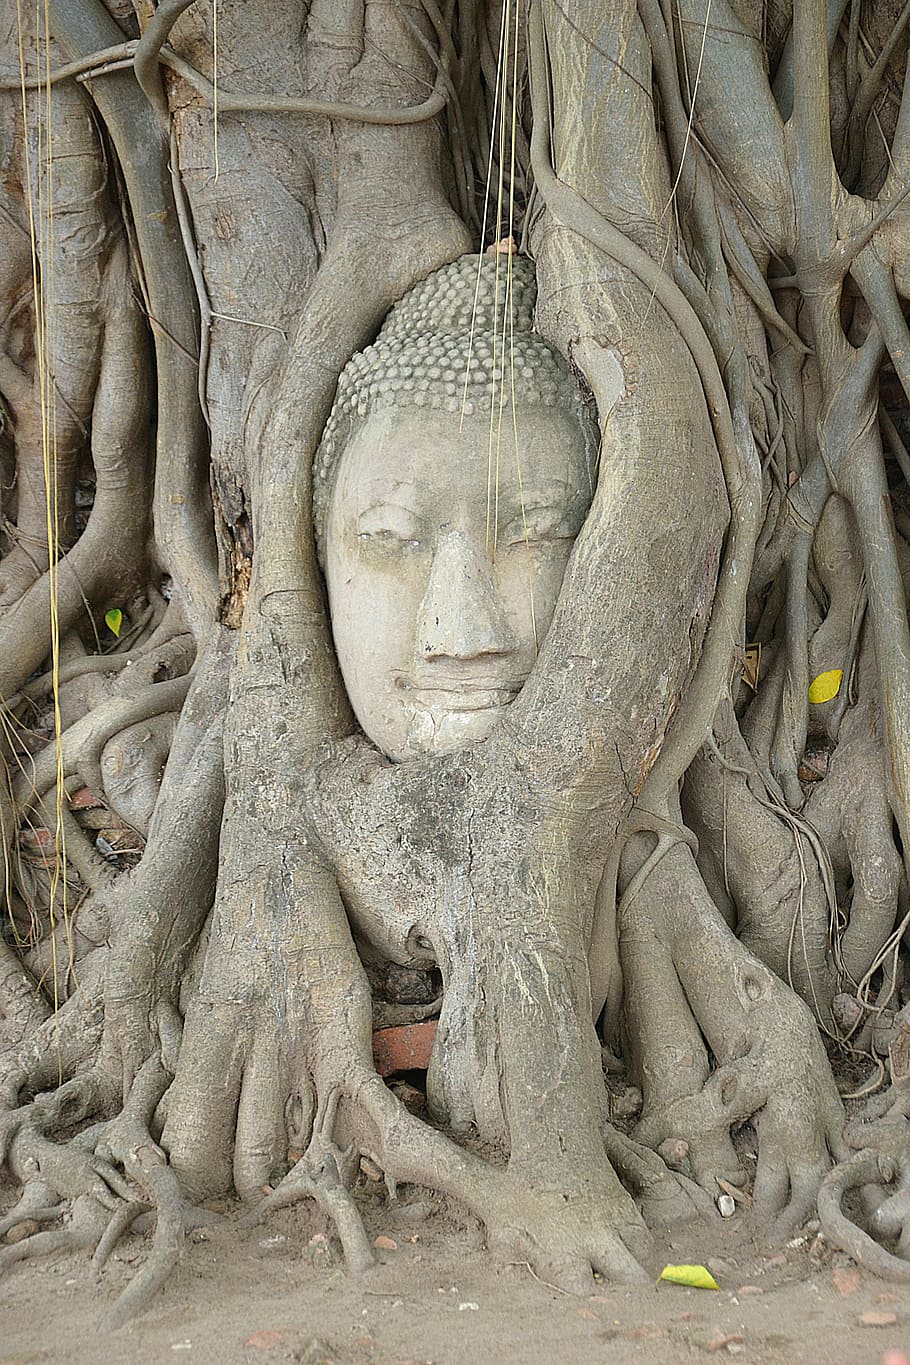 ayutthaya, buddha, wat mahathat, steinbuddha, head, root, stone, tree, thailand, world heritage